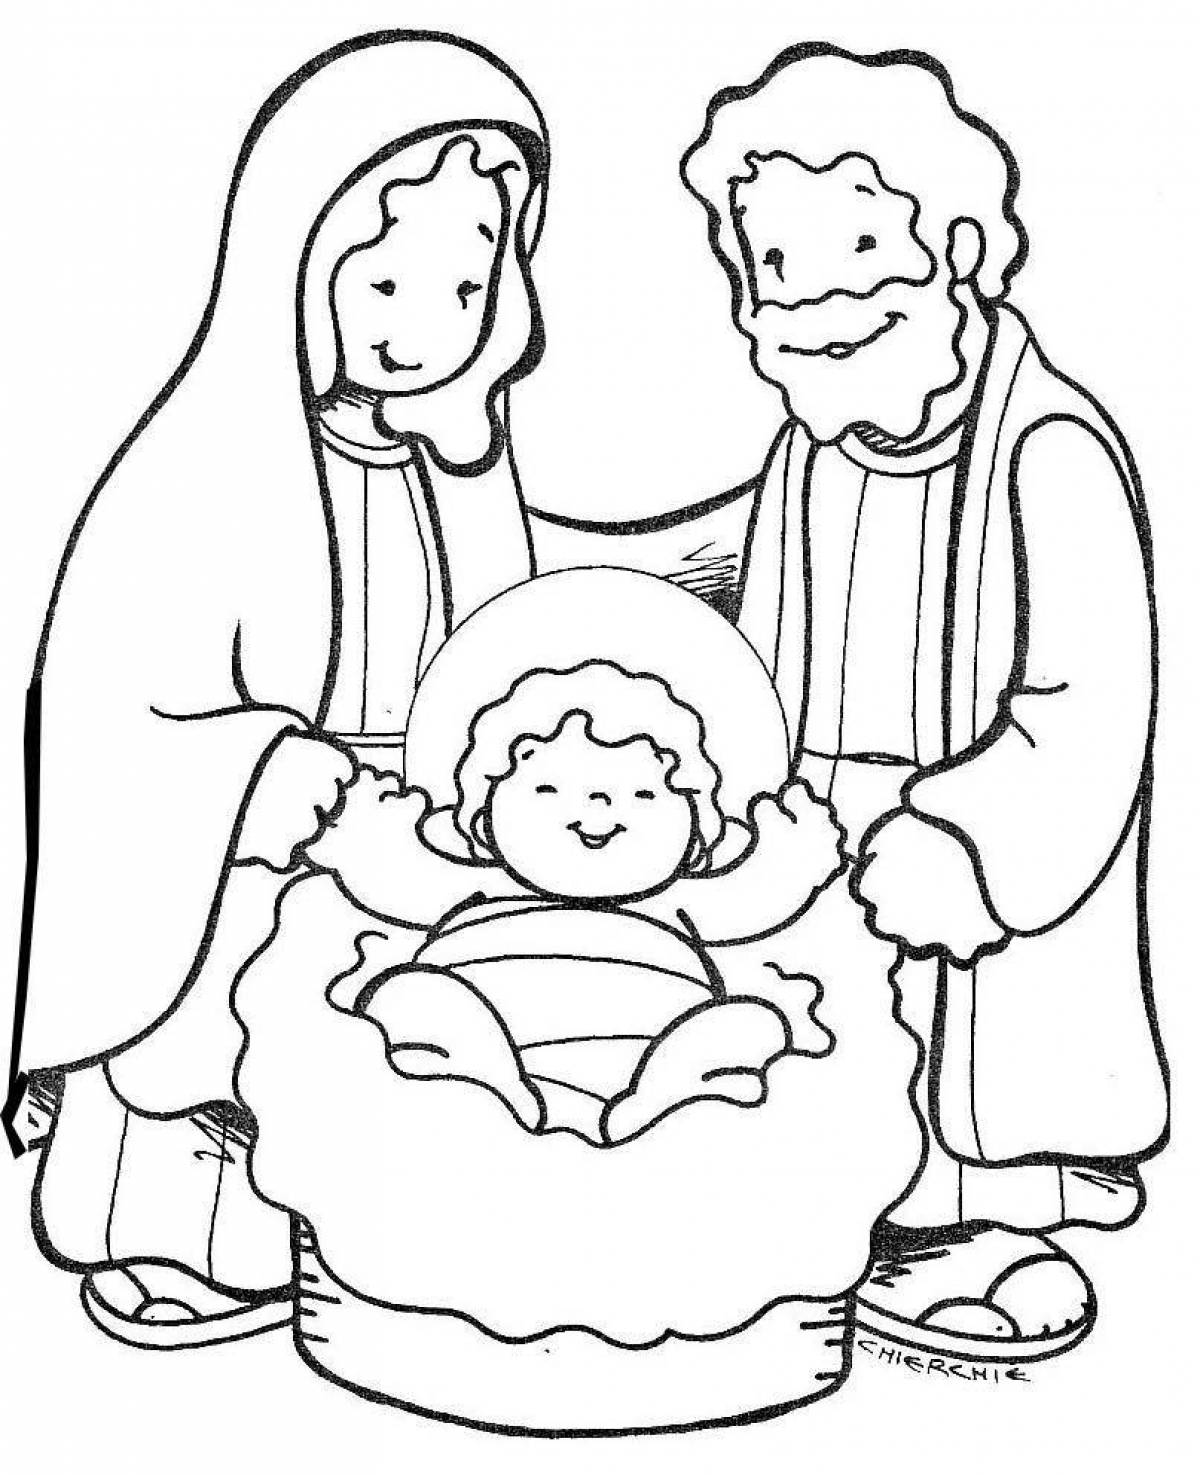 Violent jesus in the manger coloring book